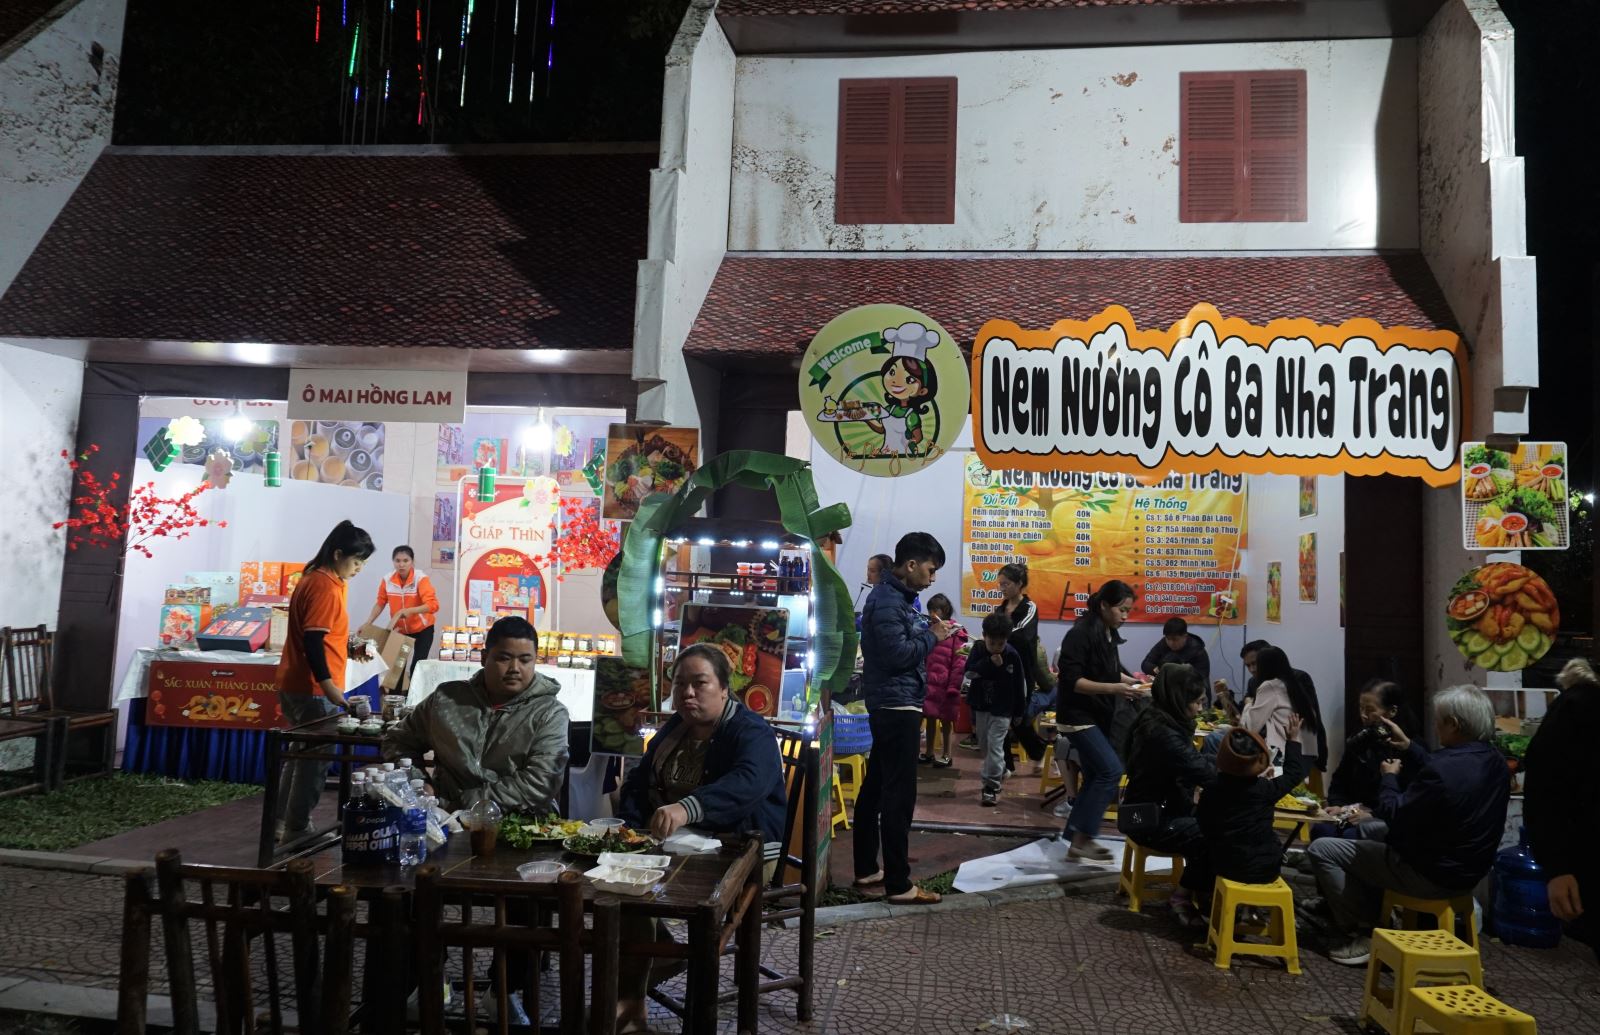 Xây dựng công nghiệp văn hóa ở Việt Nam: Trường hợp văn hóa ẩm thực